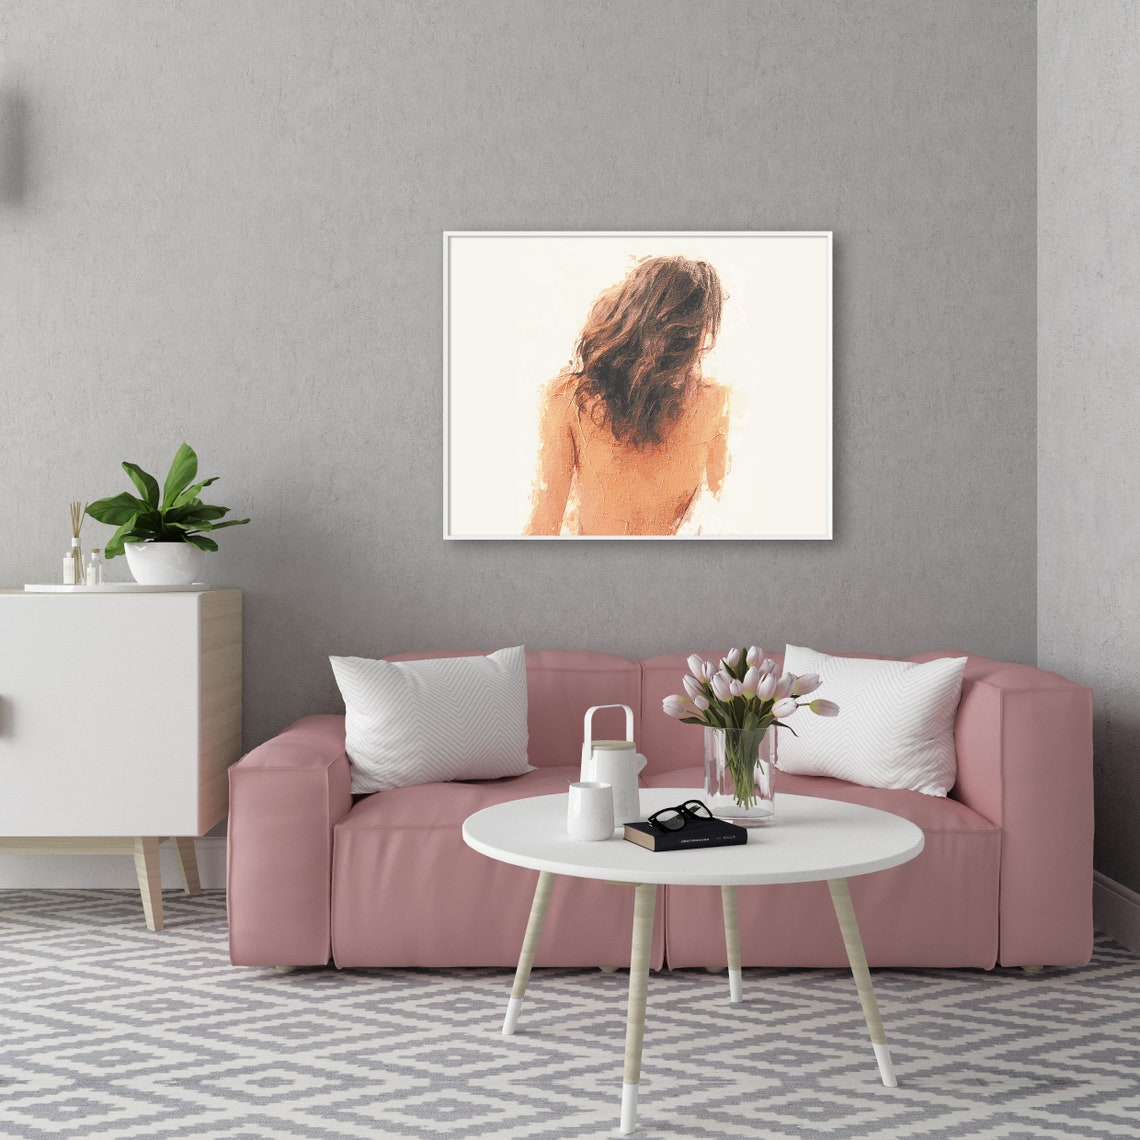 Download Horizontal Frame Mockup Living Room Frame Mockup Home Decor | Etsy